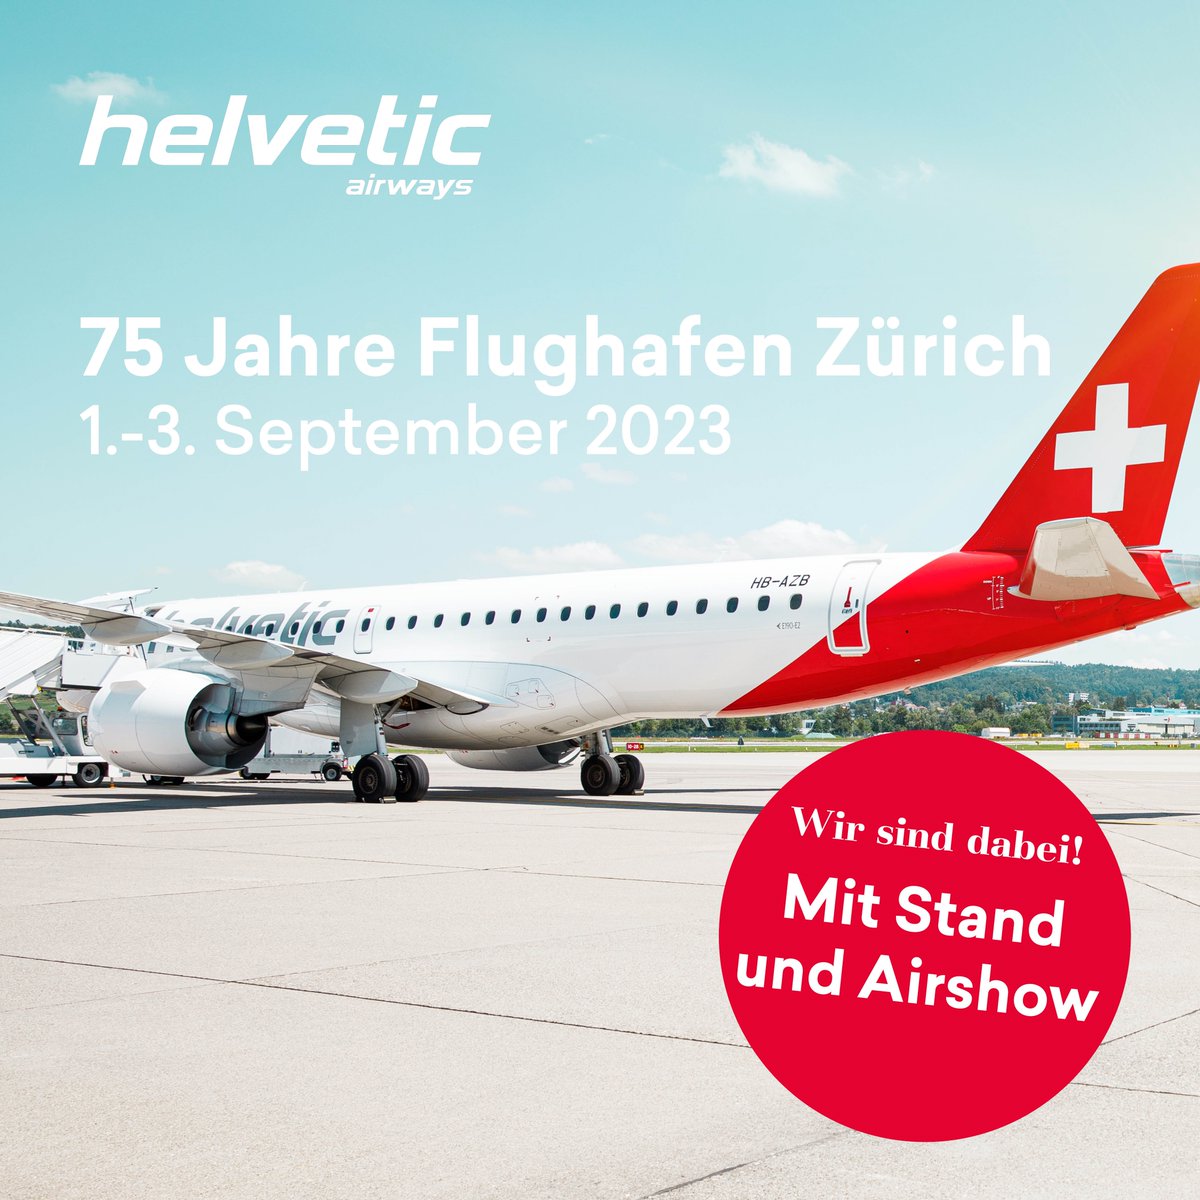 Vom 1.-3. September feiert der Flughafen Zürich sein 75-Jahre-Jubiläum und Helvetic Airways ist mitten drin. Besuche uns doch an unserem interaktiven Stand und geniesse das grosse Highlight am Freitag und Sonntag (1.& 3. September) - Wir heben gemeinsam ab mit Patrouille Suisse.